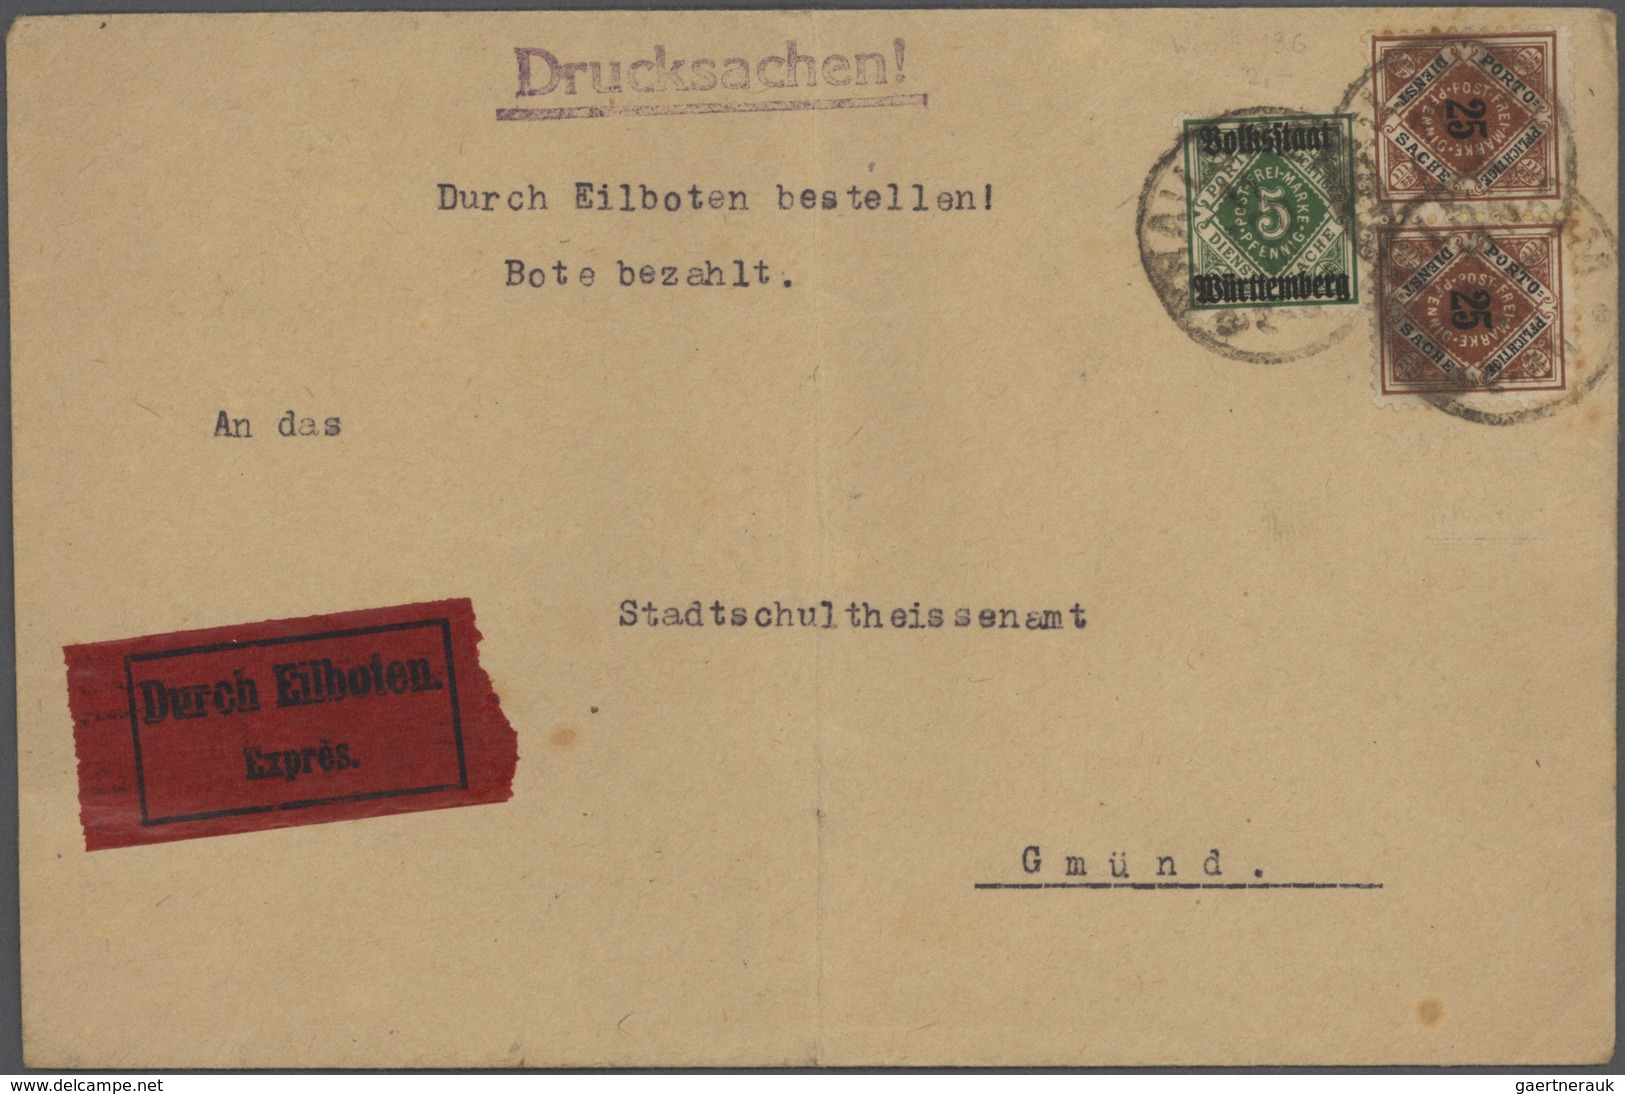 31141 Altdeutschland: 1820/1920, ca. 140 Briefe, Karten und Ganzsachen ab Vorphila mit meist einfachen Fra